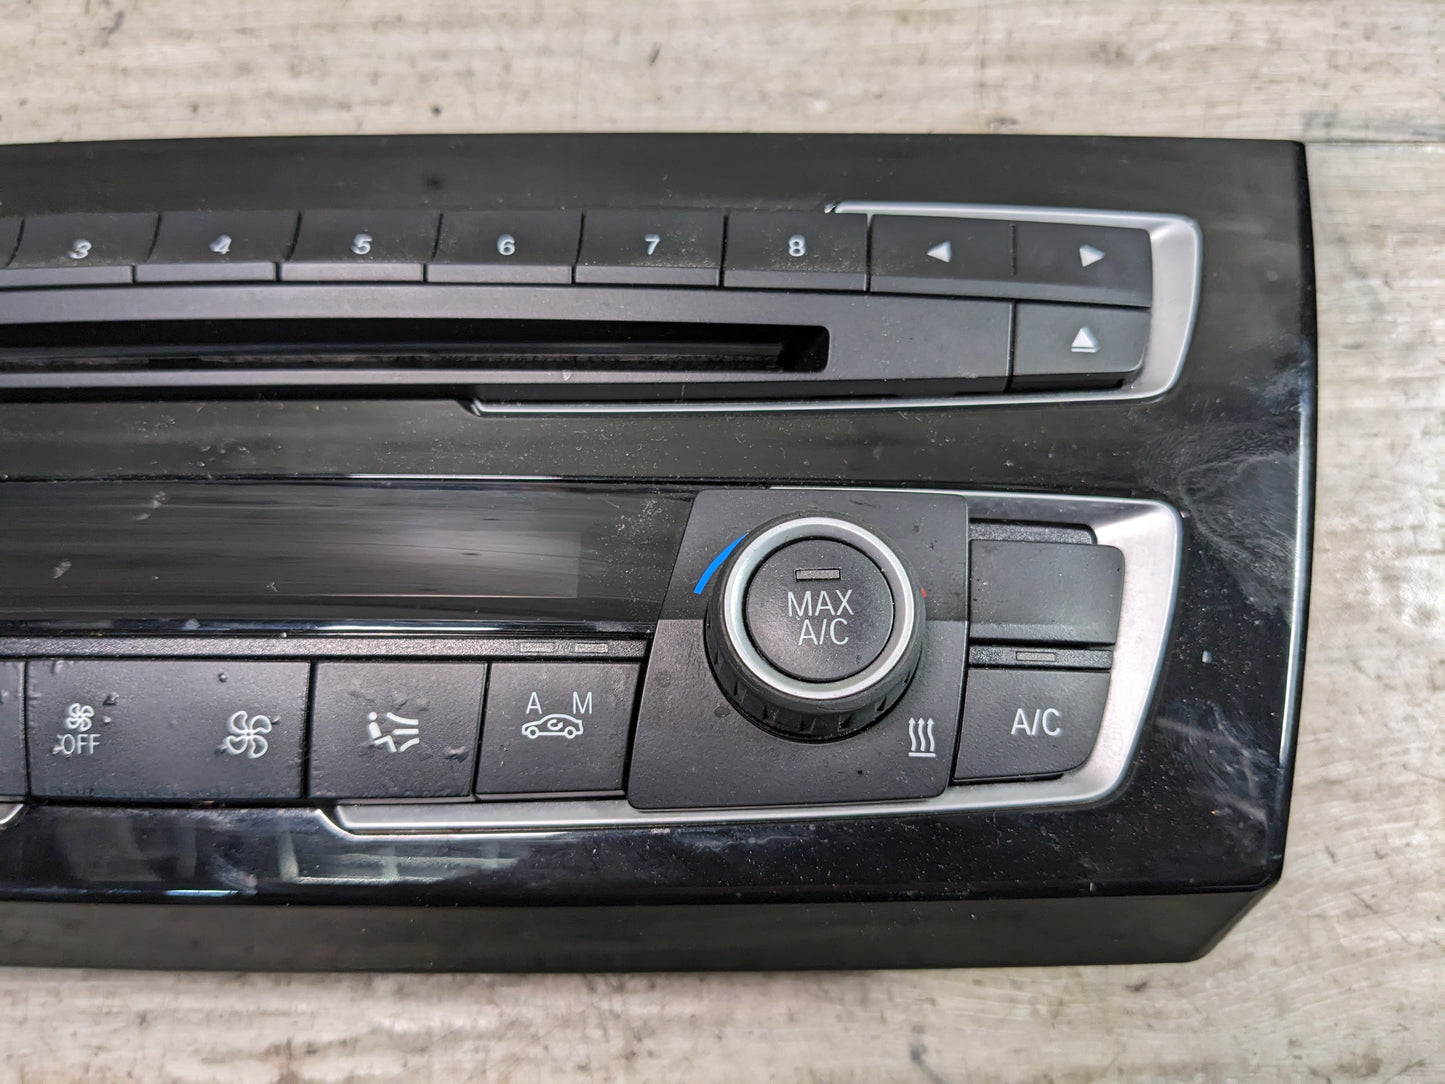 12-16 OEM BMW F22 F32 F30 F36 M4 M3 AC Heater Control Panel Radio Media Buttons